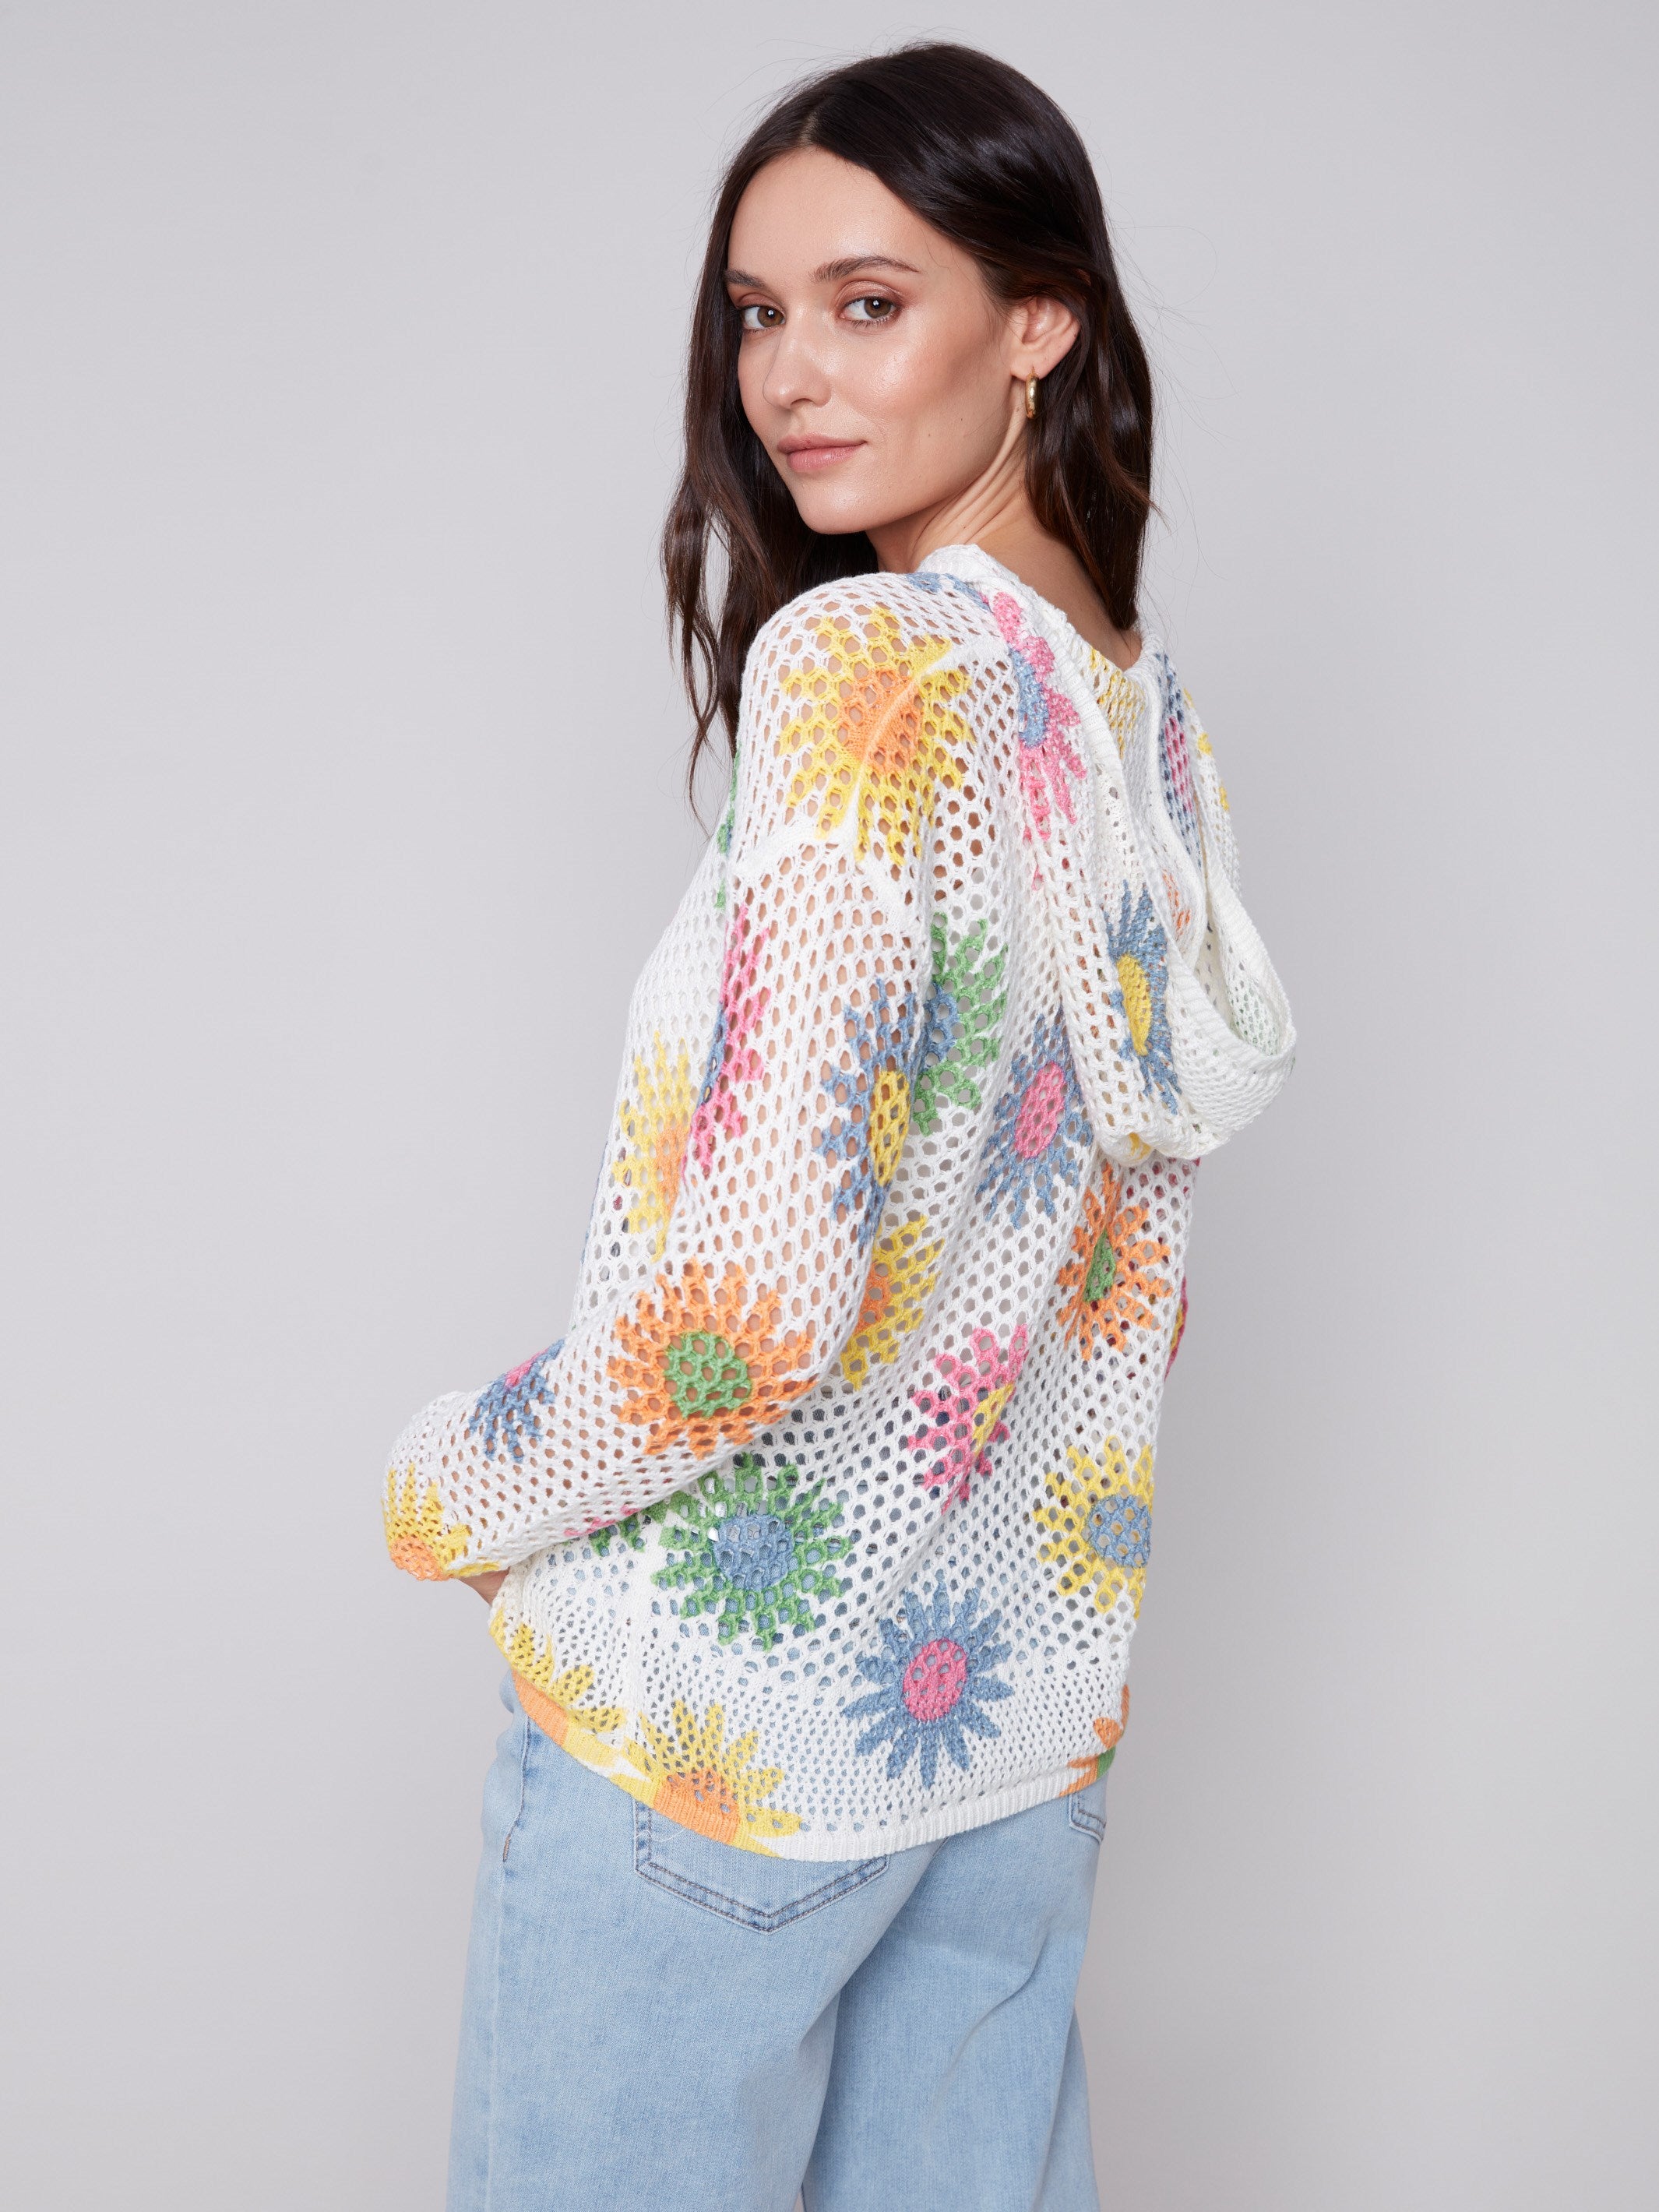 Charlie B Printed Fishnet Crochet Hoodie Sweater - Daisies - Image 2